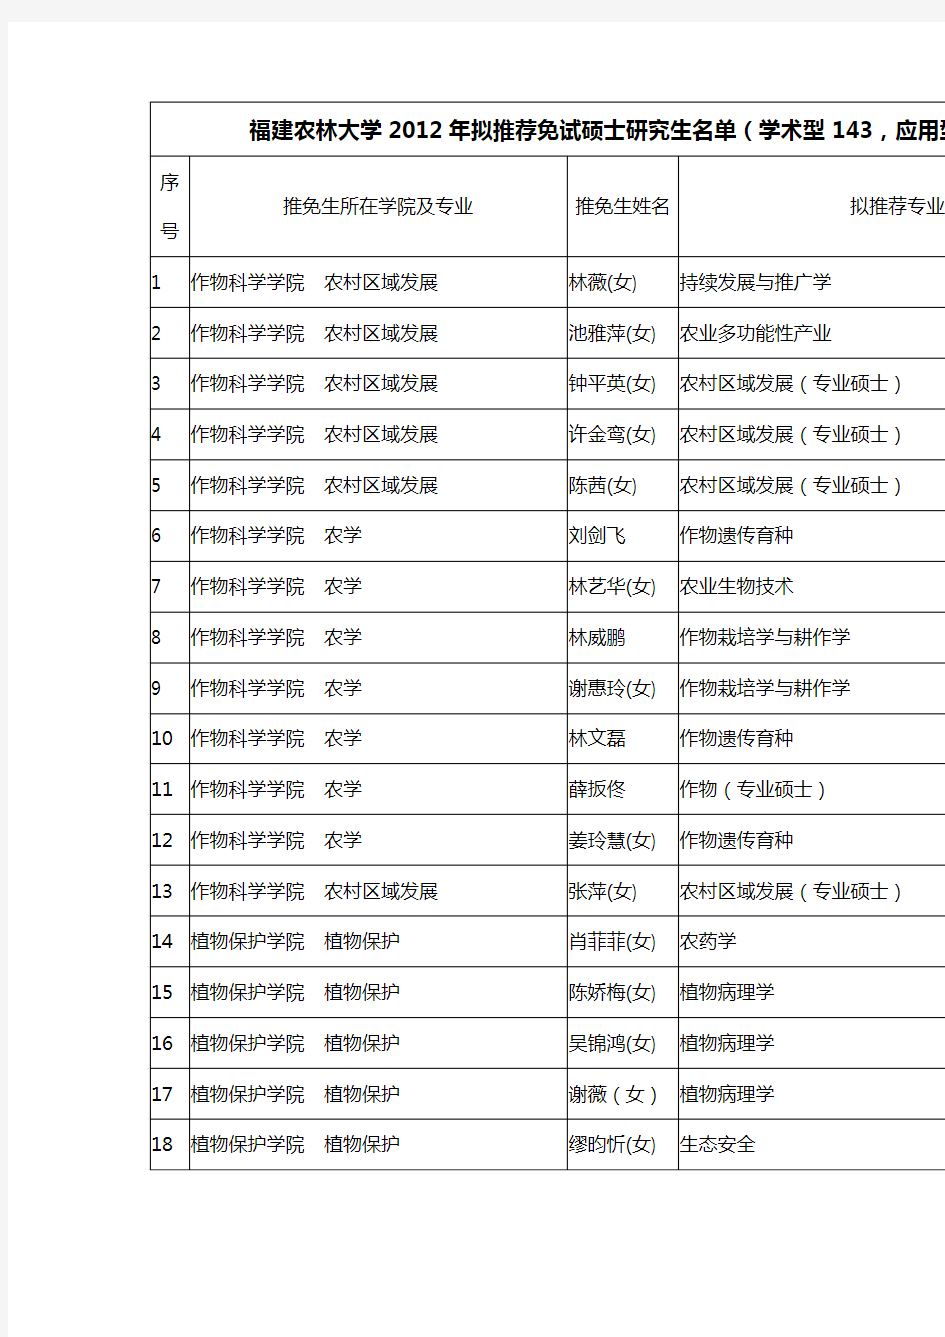 福建农林大学2012年拟推荐免试硕士研究生名单(学术型